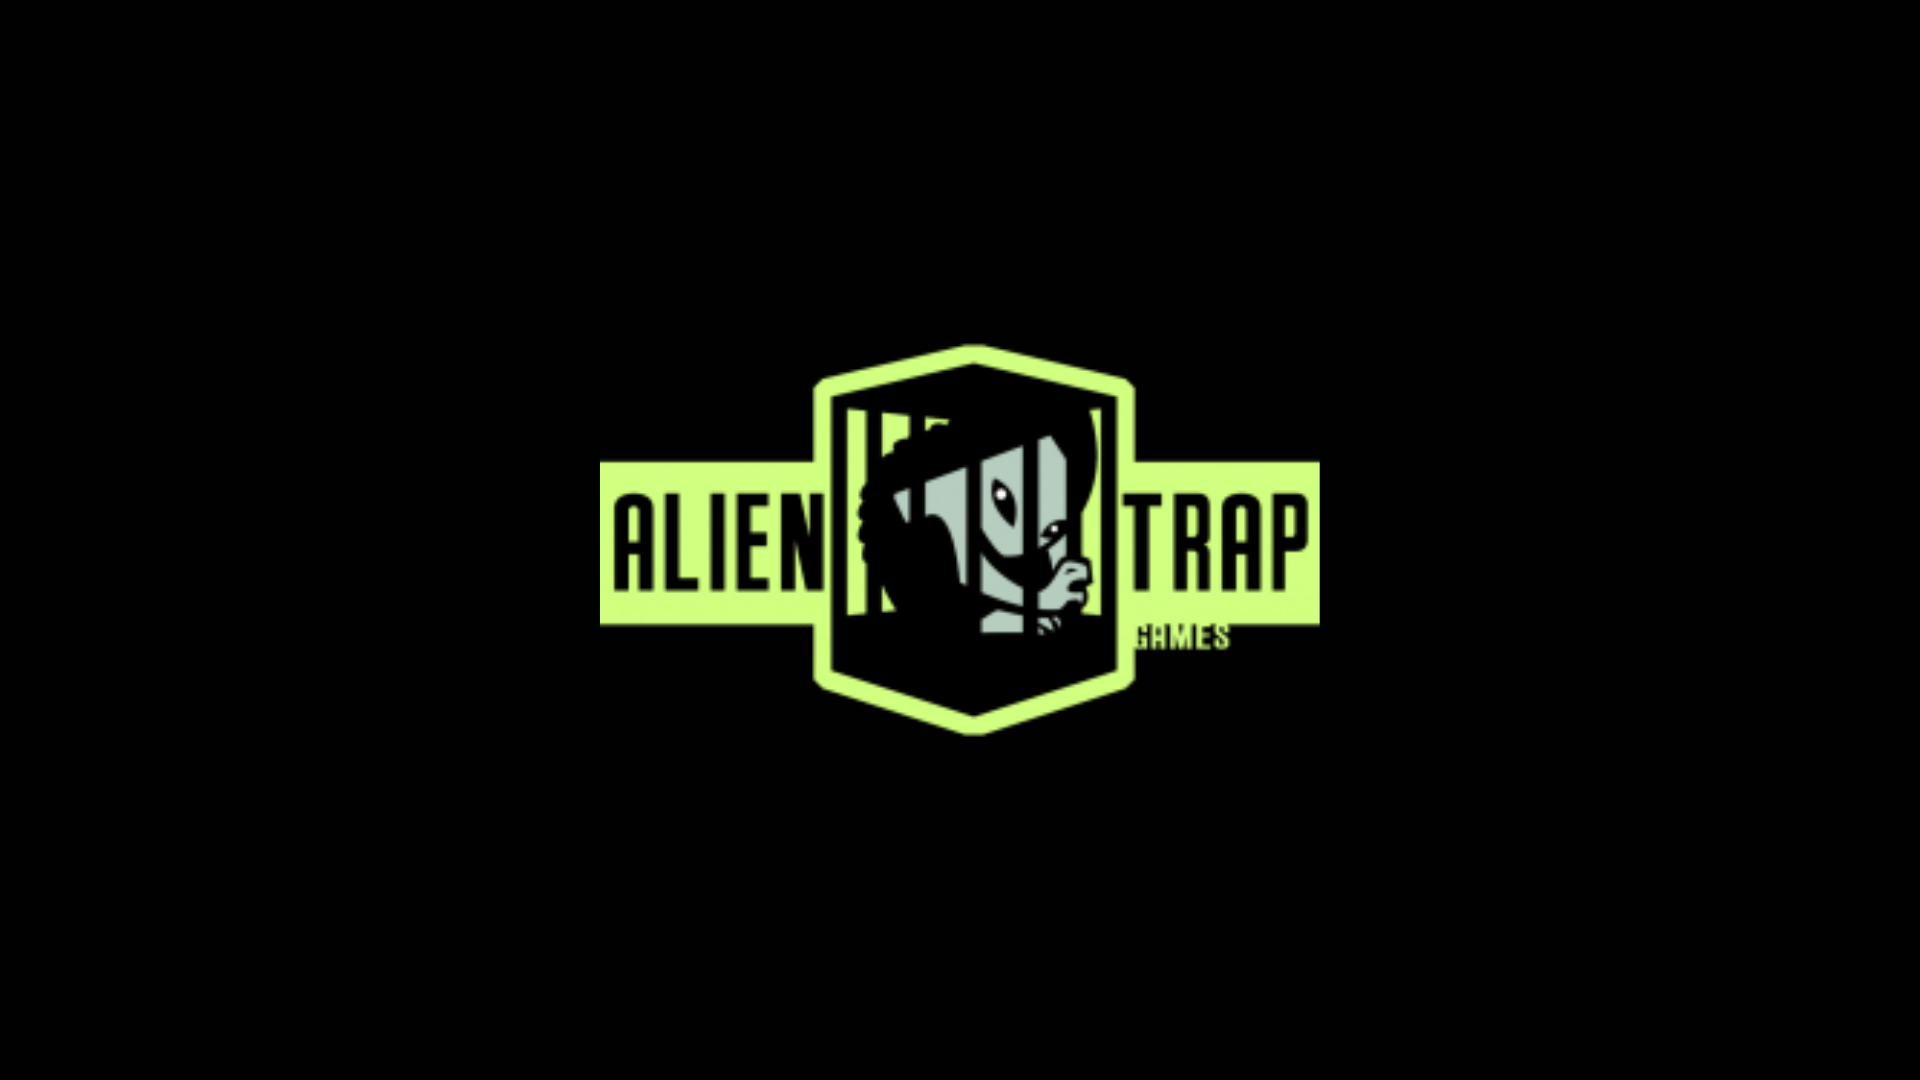 Alientrap